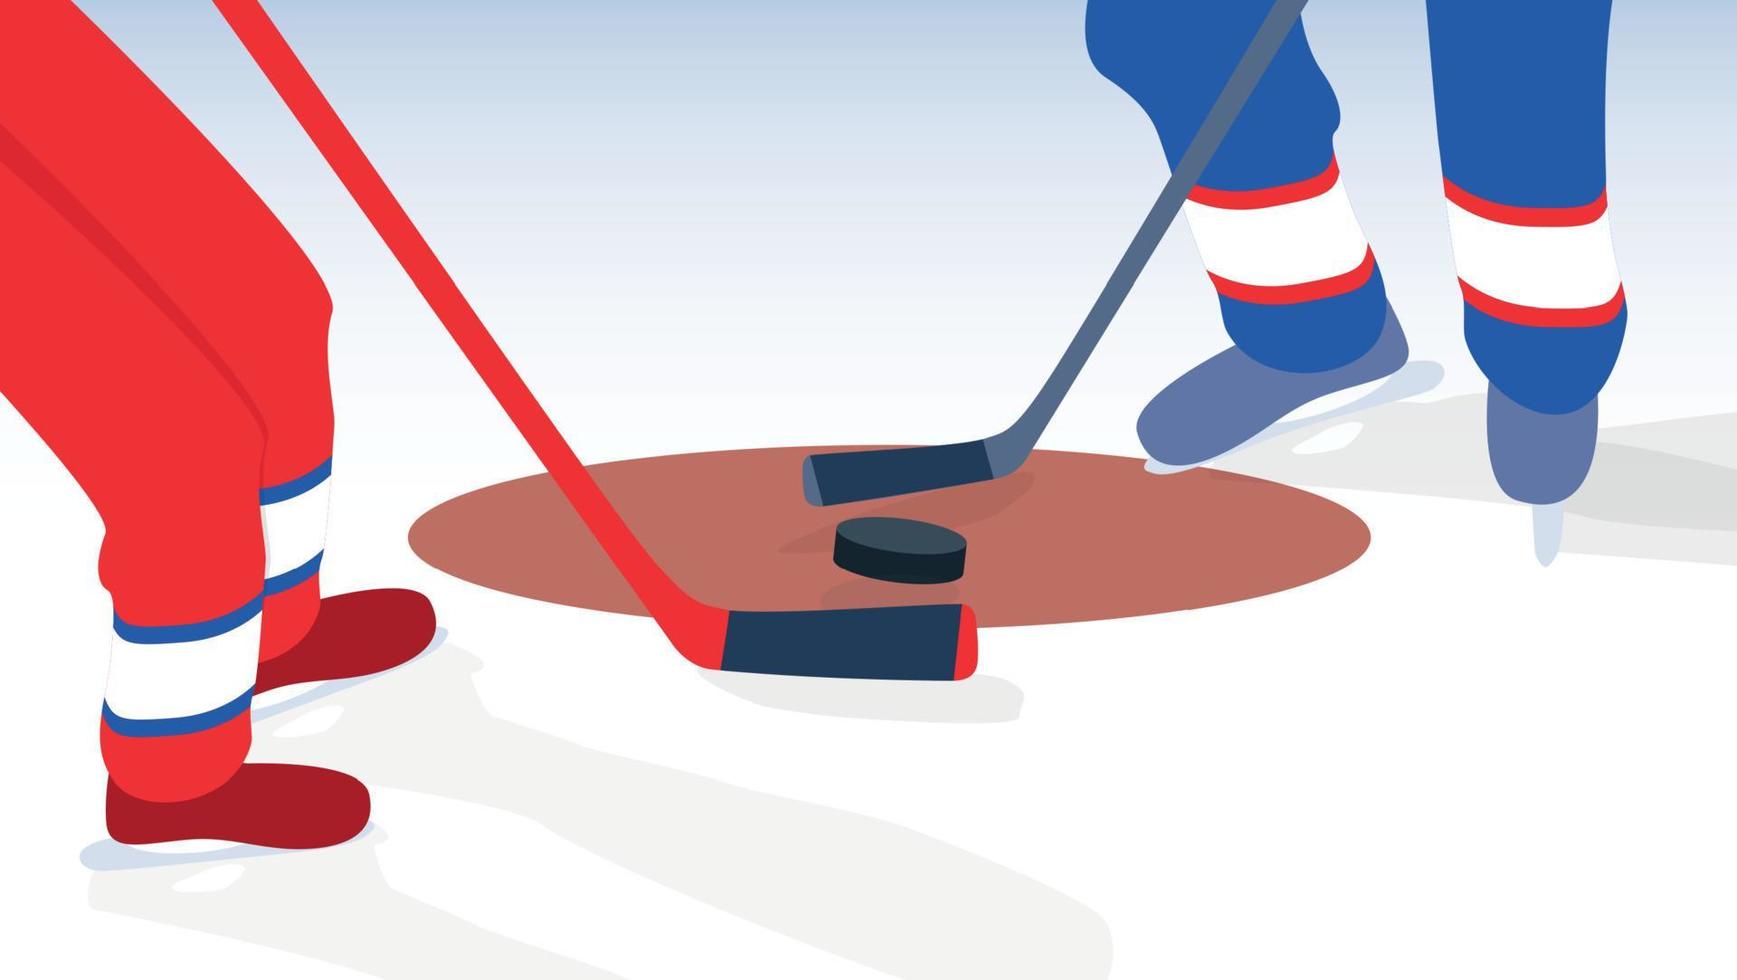 ijshockeyspeler met stok en puck. vectorillustratie. vector